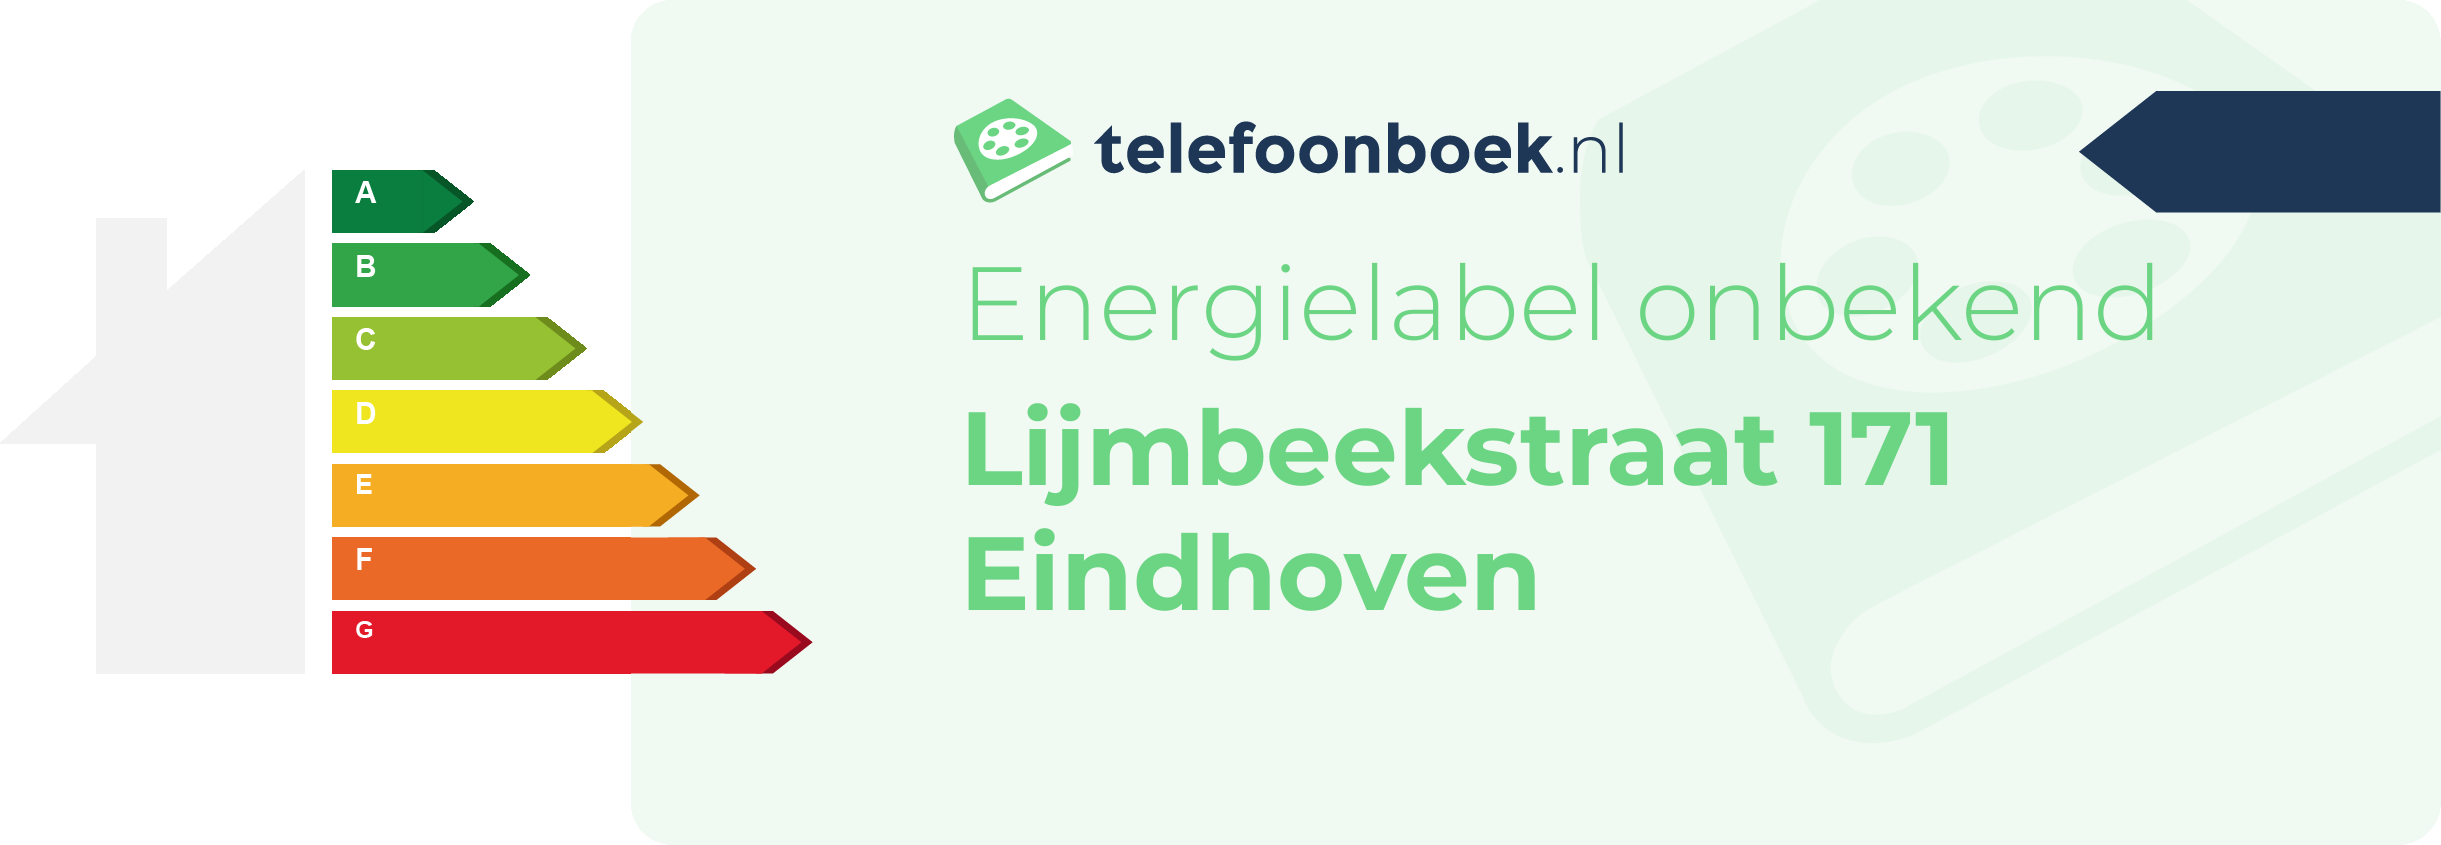 Energielabel Lijmbeekstraat 171 Eindhoven